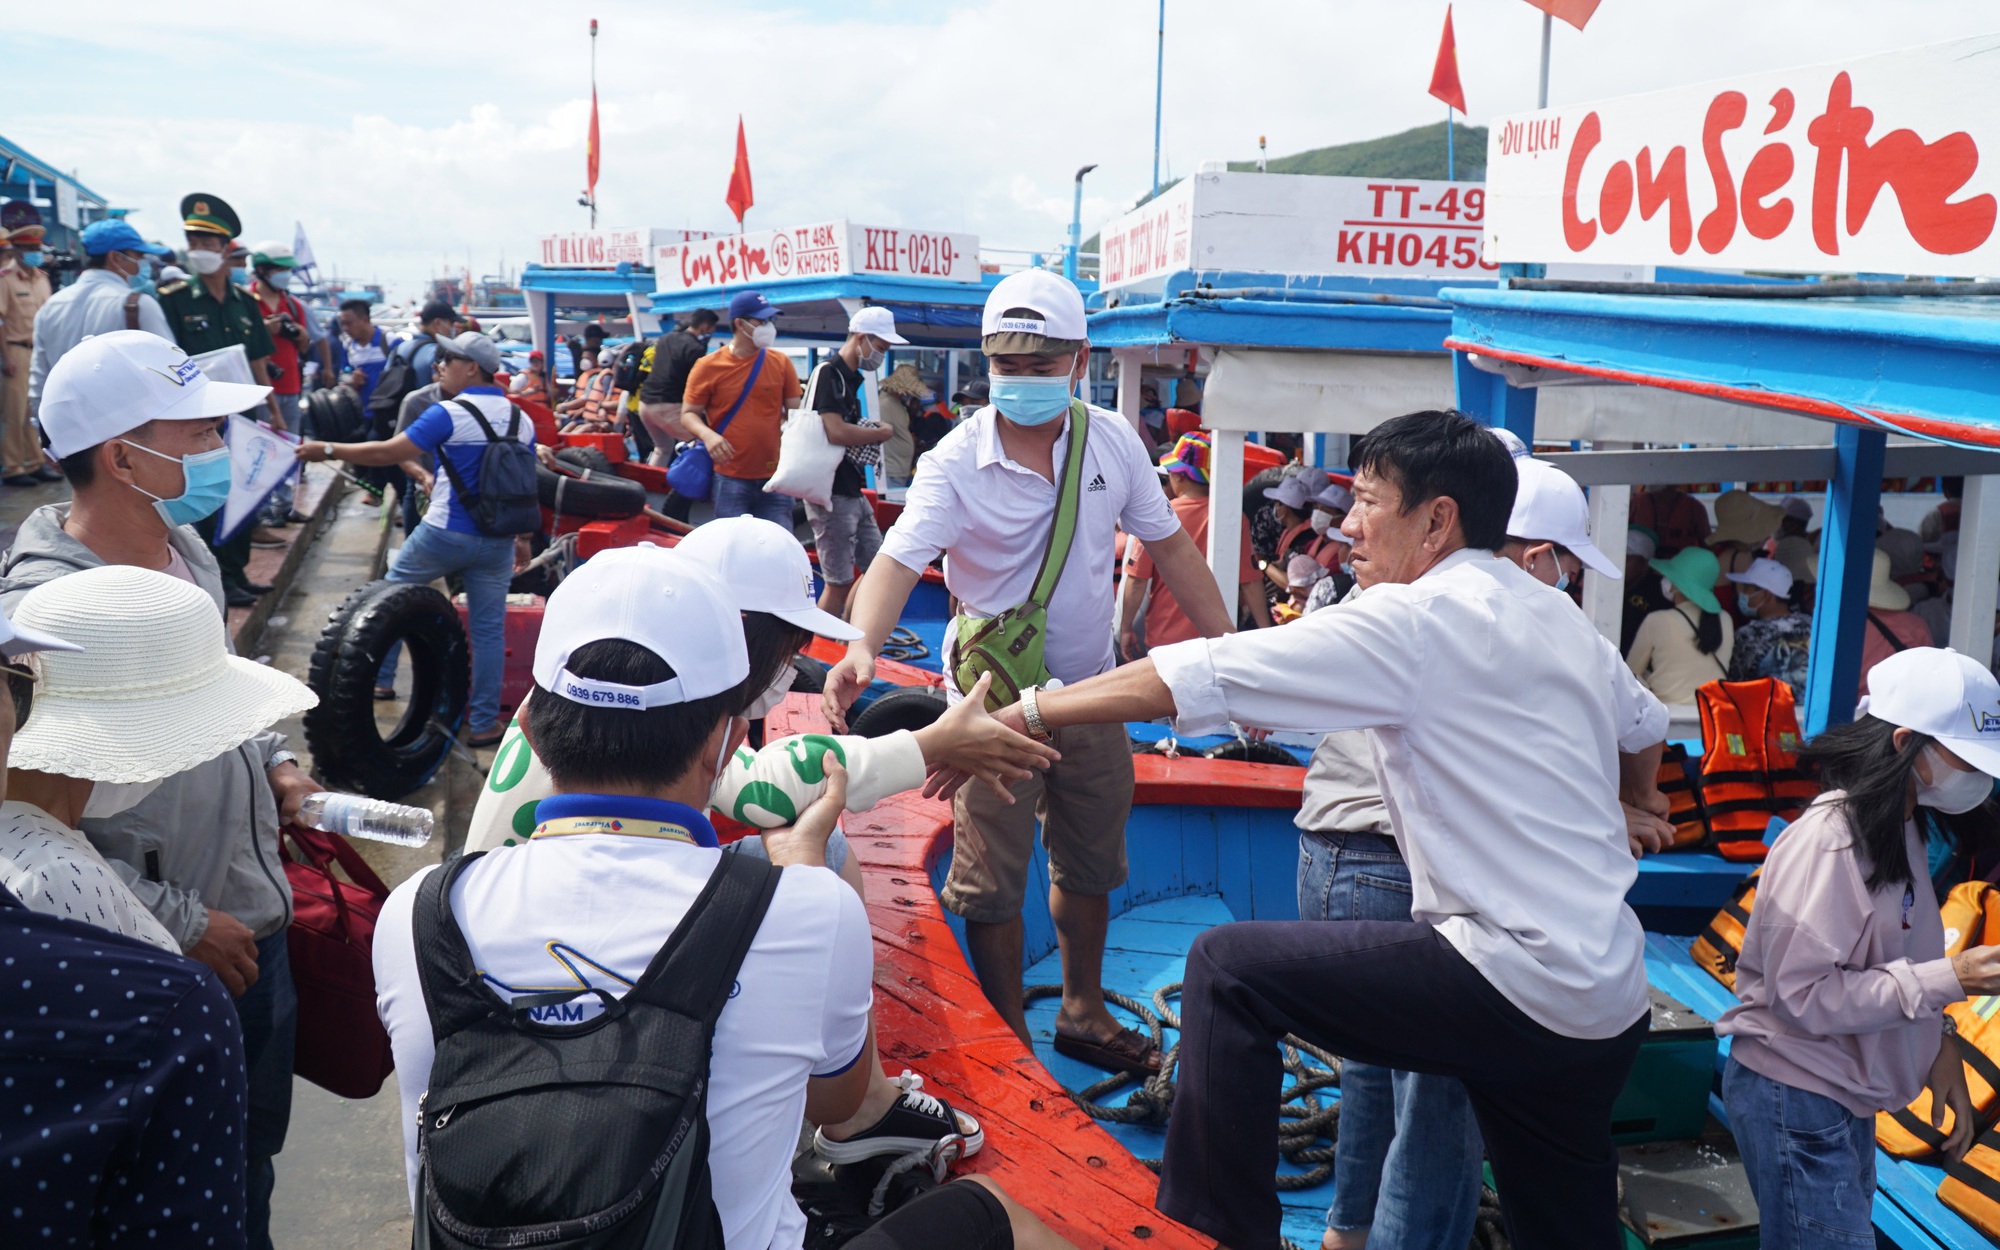 Hàng nghìn du khách chen nhau đi các tour đảo ở Nha Trang trong kỳ nghỉ lễ 30/4